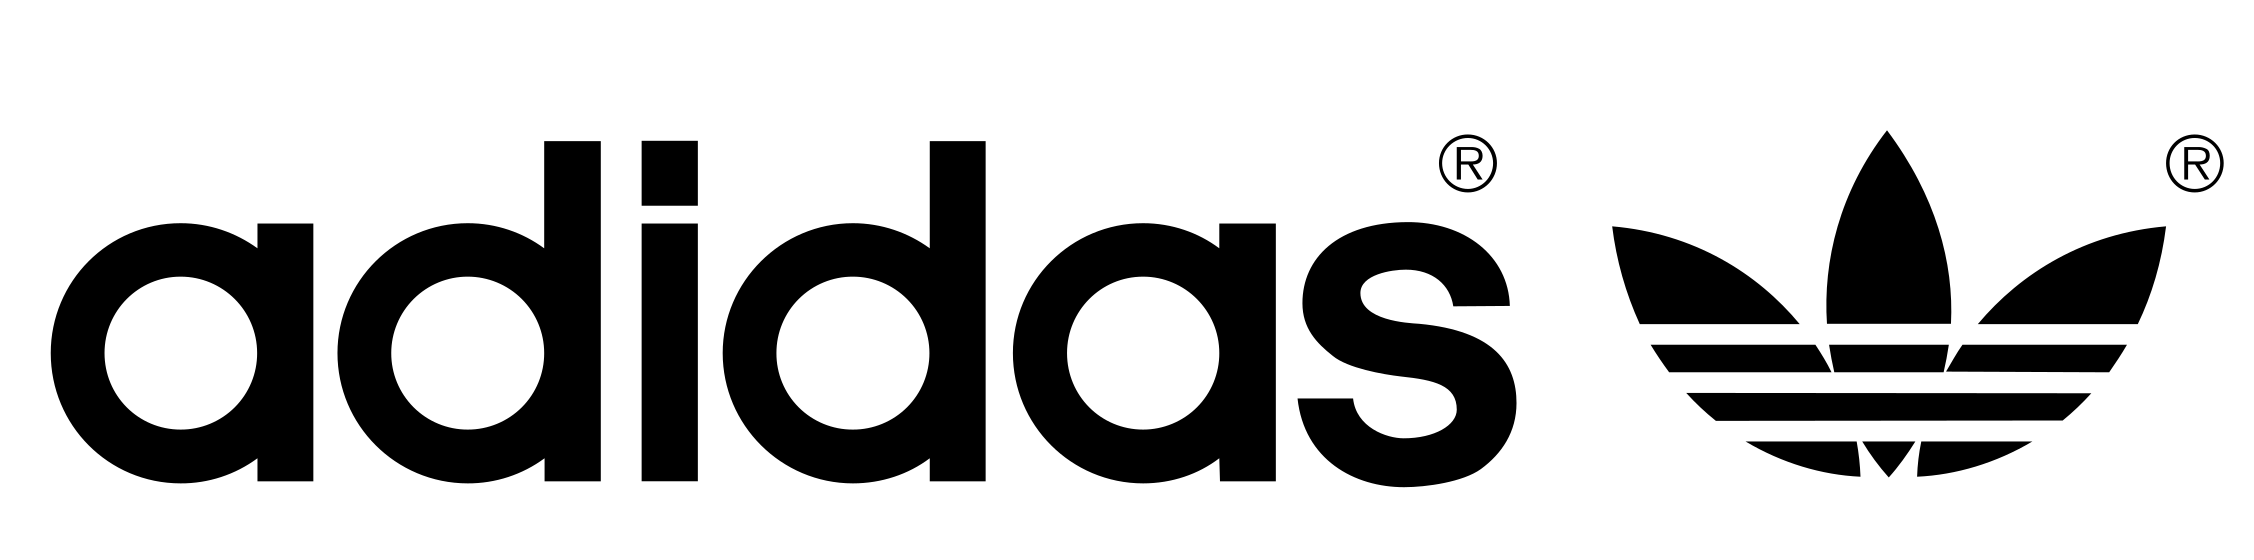 Adidas logo Black PNG прозрачный образ